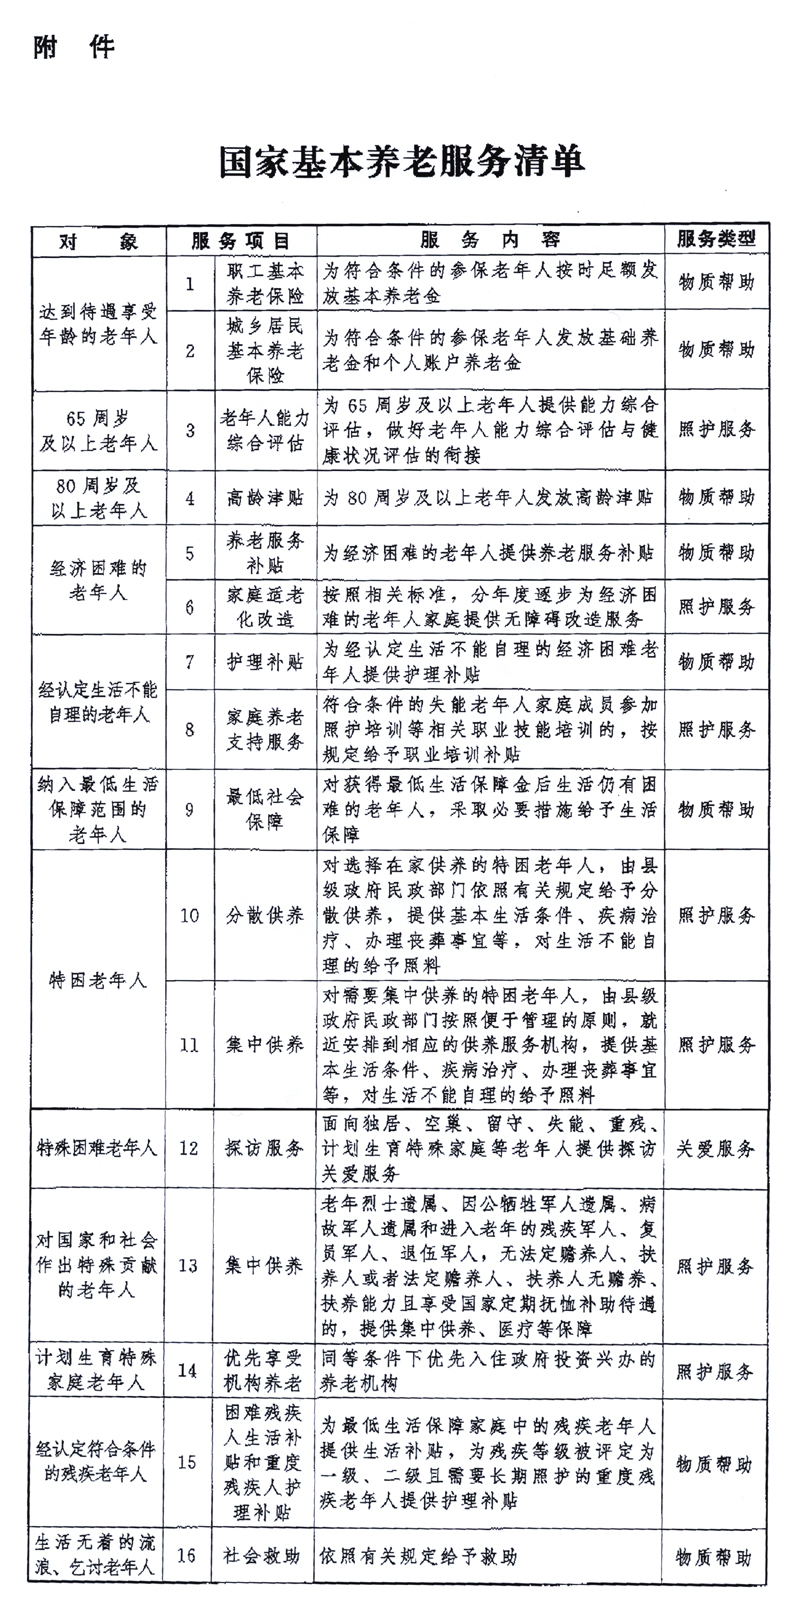 中共中央办公厅 国务院办公厅印发《关于推进基本养老服务体系建设的意见》(图1)